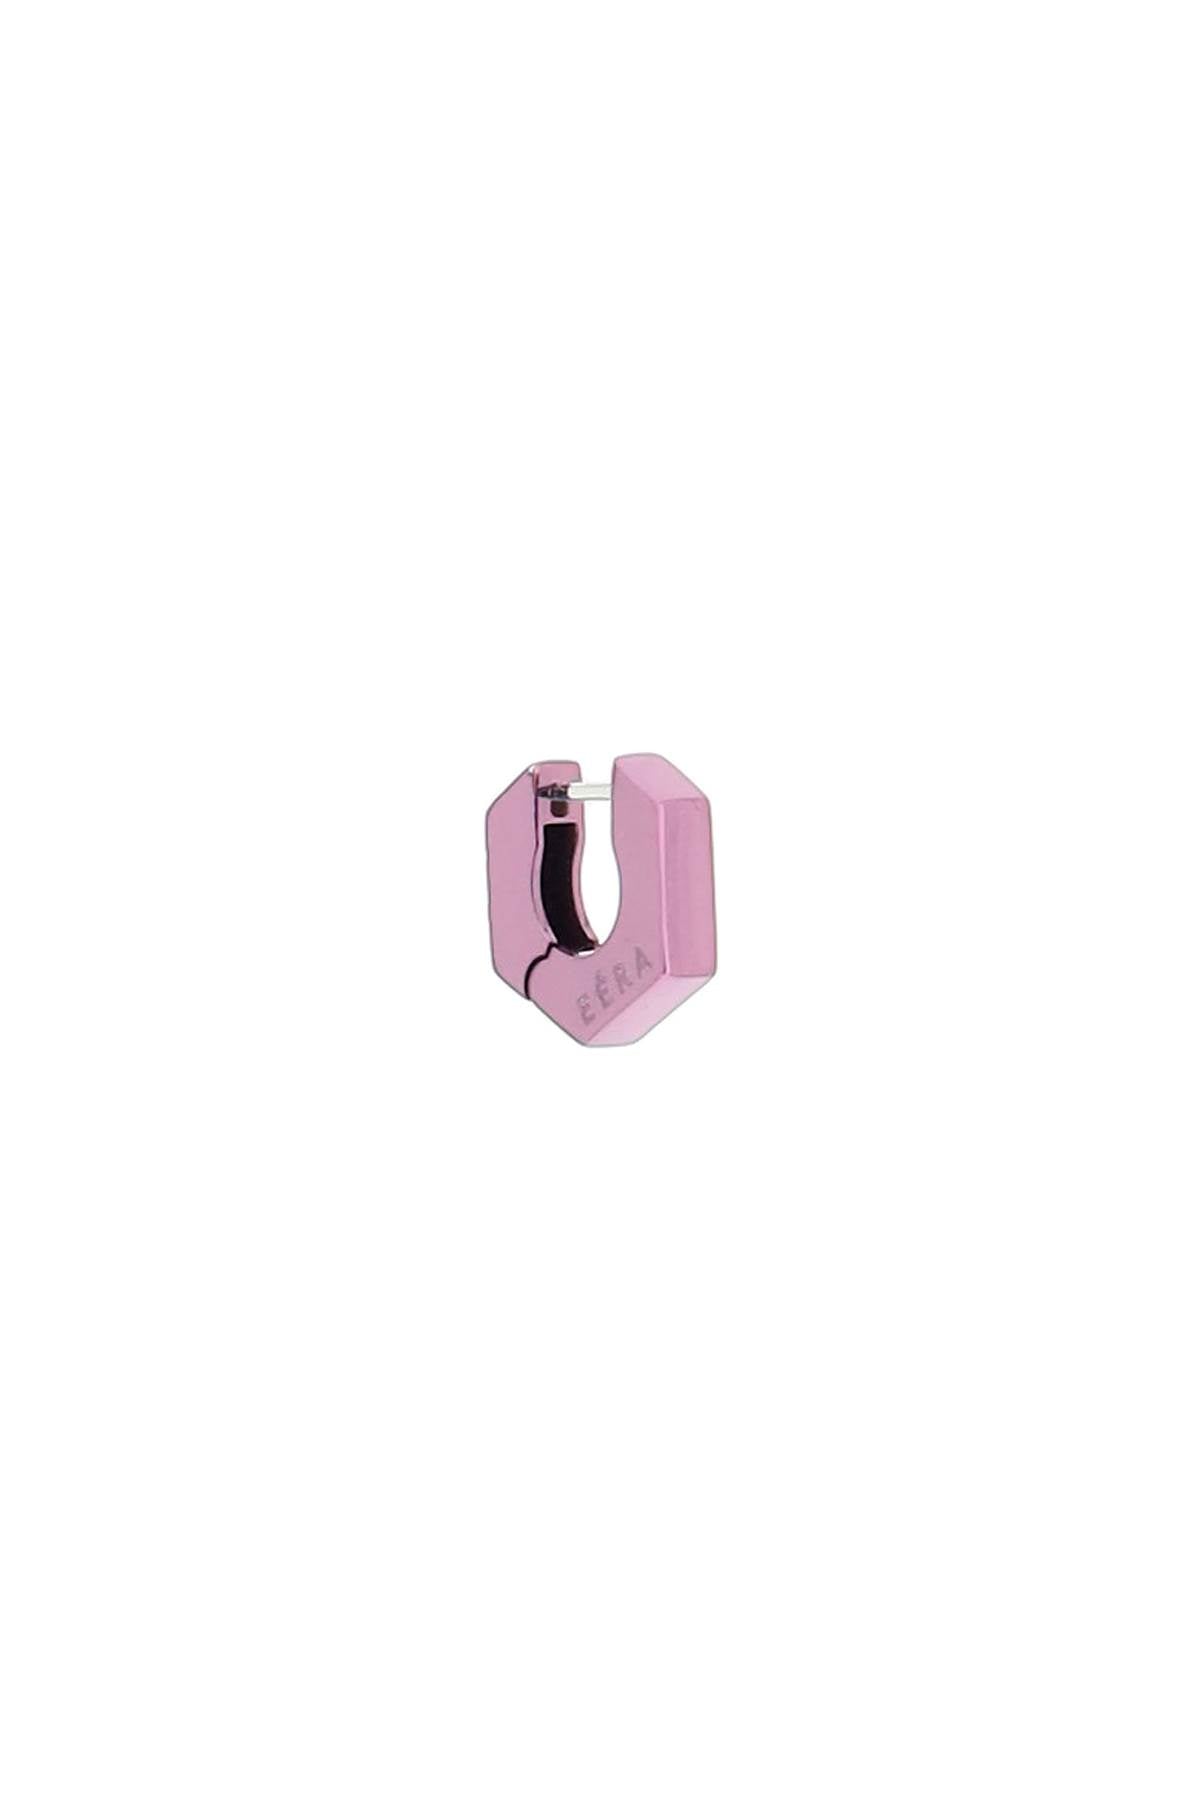 Eera 'mini dado' single earrings-0